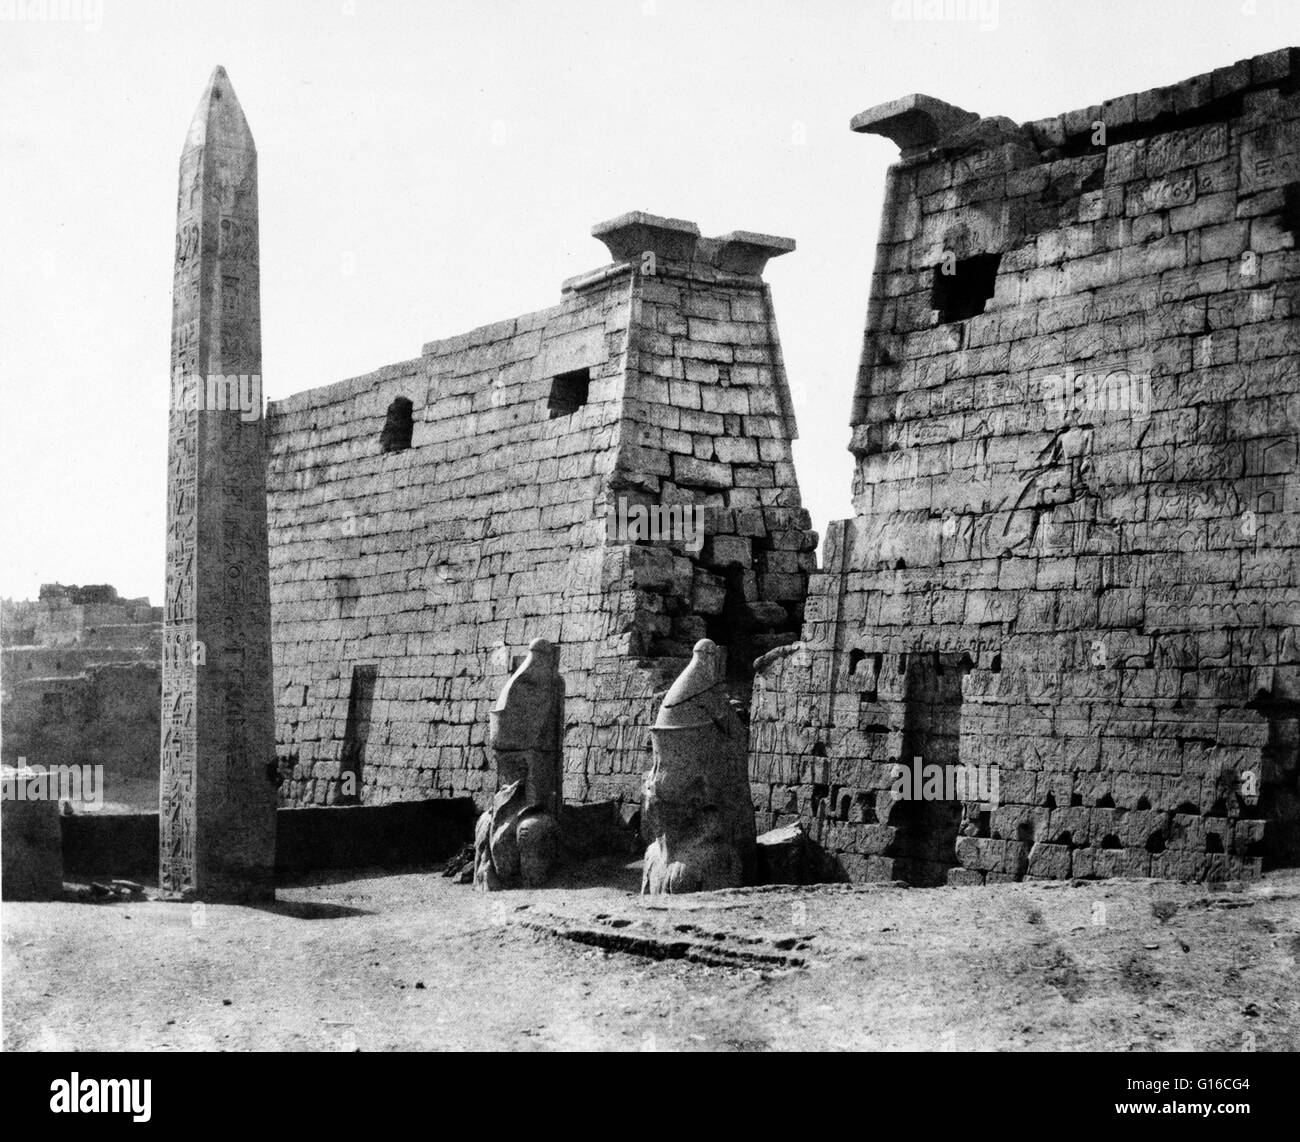 Il rimanente obelisco al Tempio di Luxor Pilone, Egitto fotografata da Felix Teynard, 1858. Tempio di Luxor è un grande antico tempio Egizio complesso situato sulla riva orientale del Nilo nella città oggi conosciuta come Luxor (antica Tebe) e fu fondato nel Foto Stock